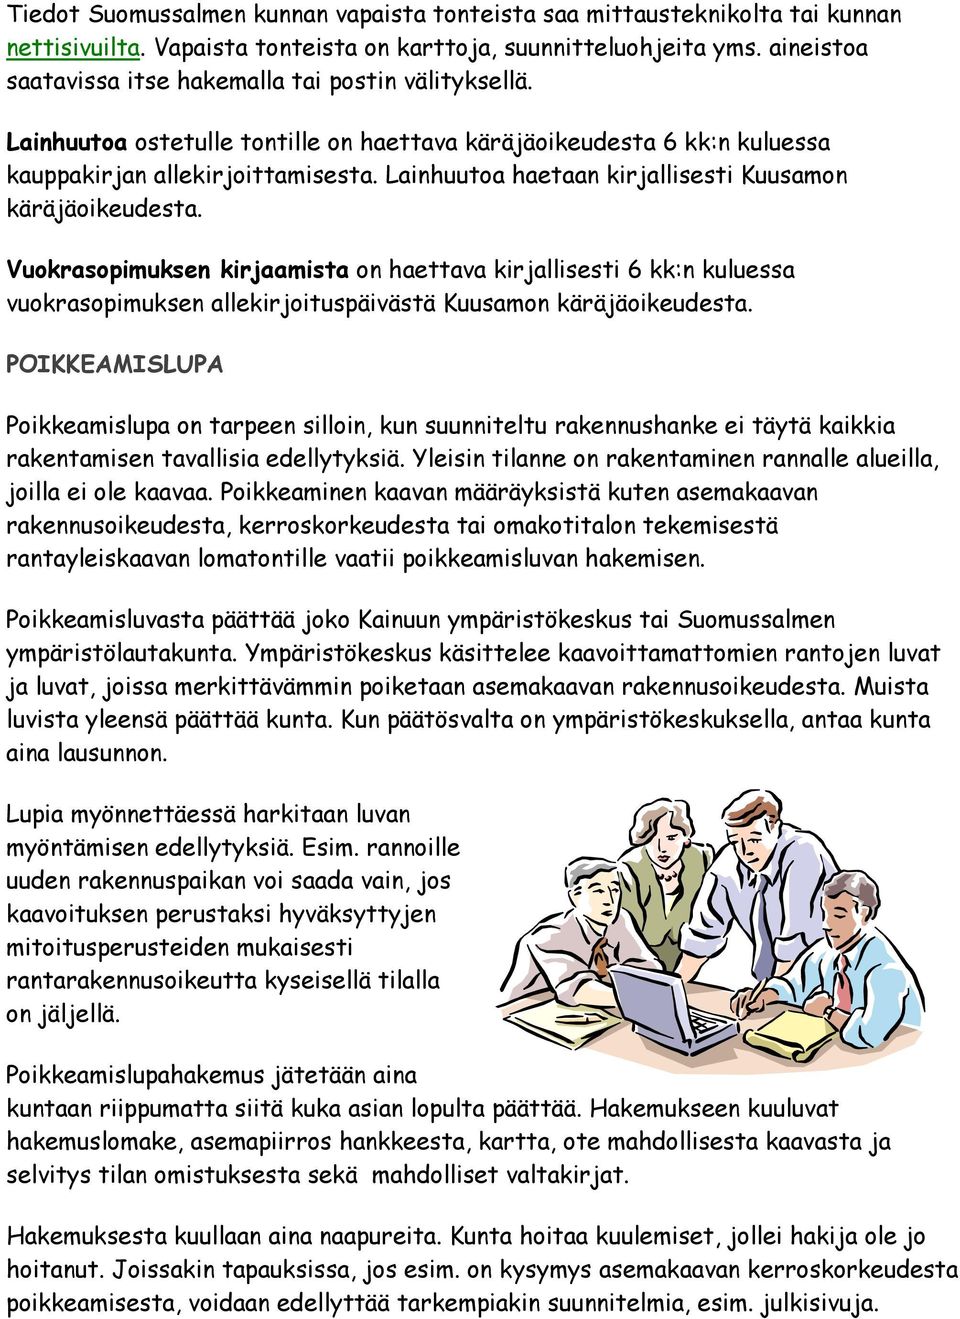 Lainhuutoa haetaan kirjallisesti Kuusamon käräjäoikeudesta. Vuokrasopimuksen kirjaamista on haettava kirjallisesti 6 kk:n kuluessa vuokrasopimuksen allekirjoituspäivästä Kuusamon käräjäoikeudesta.